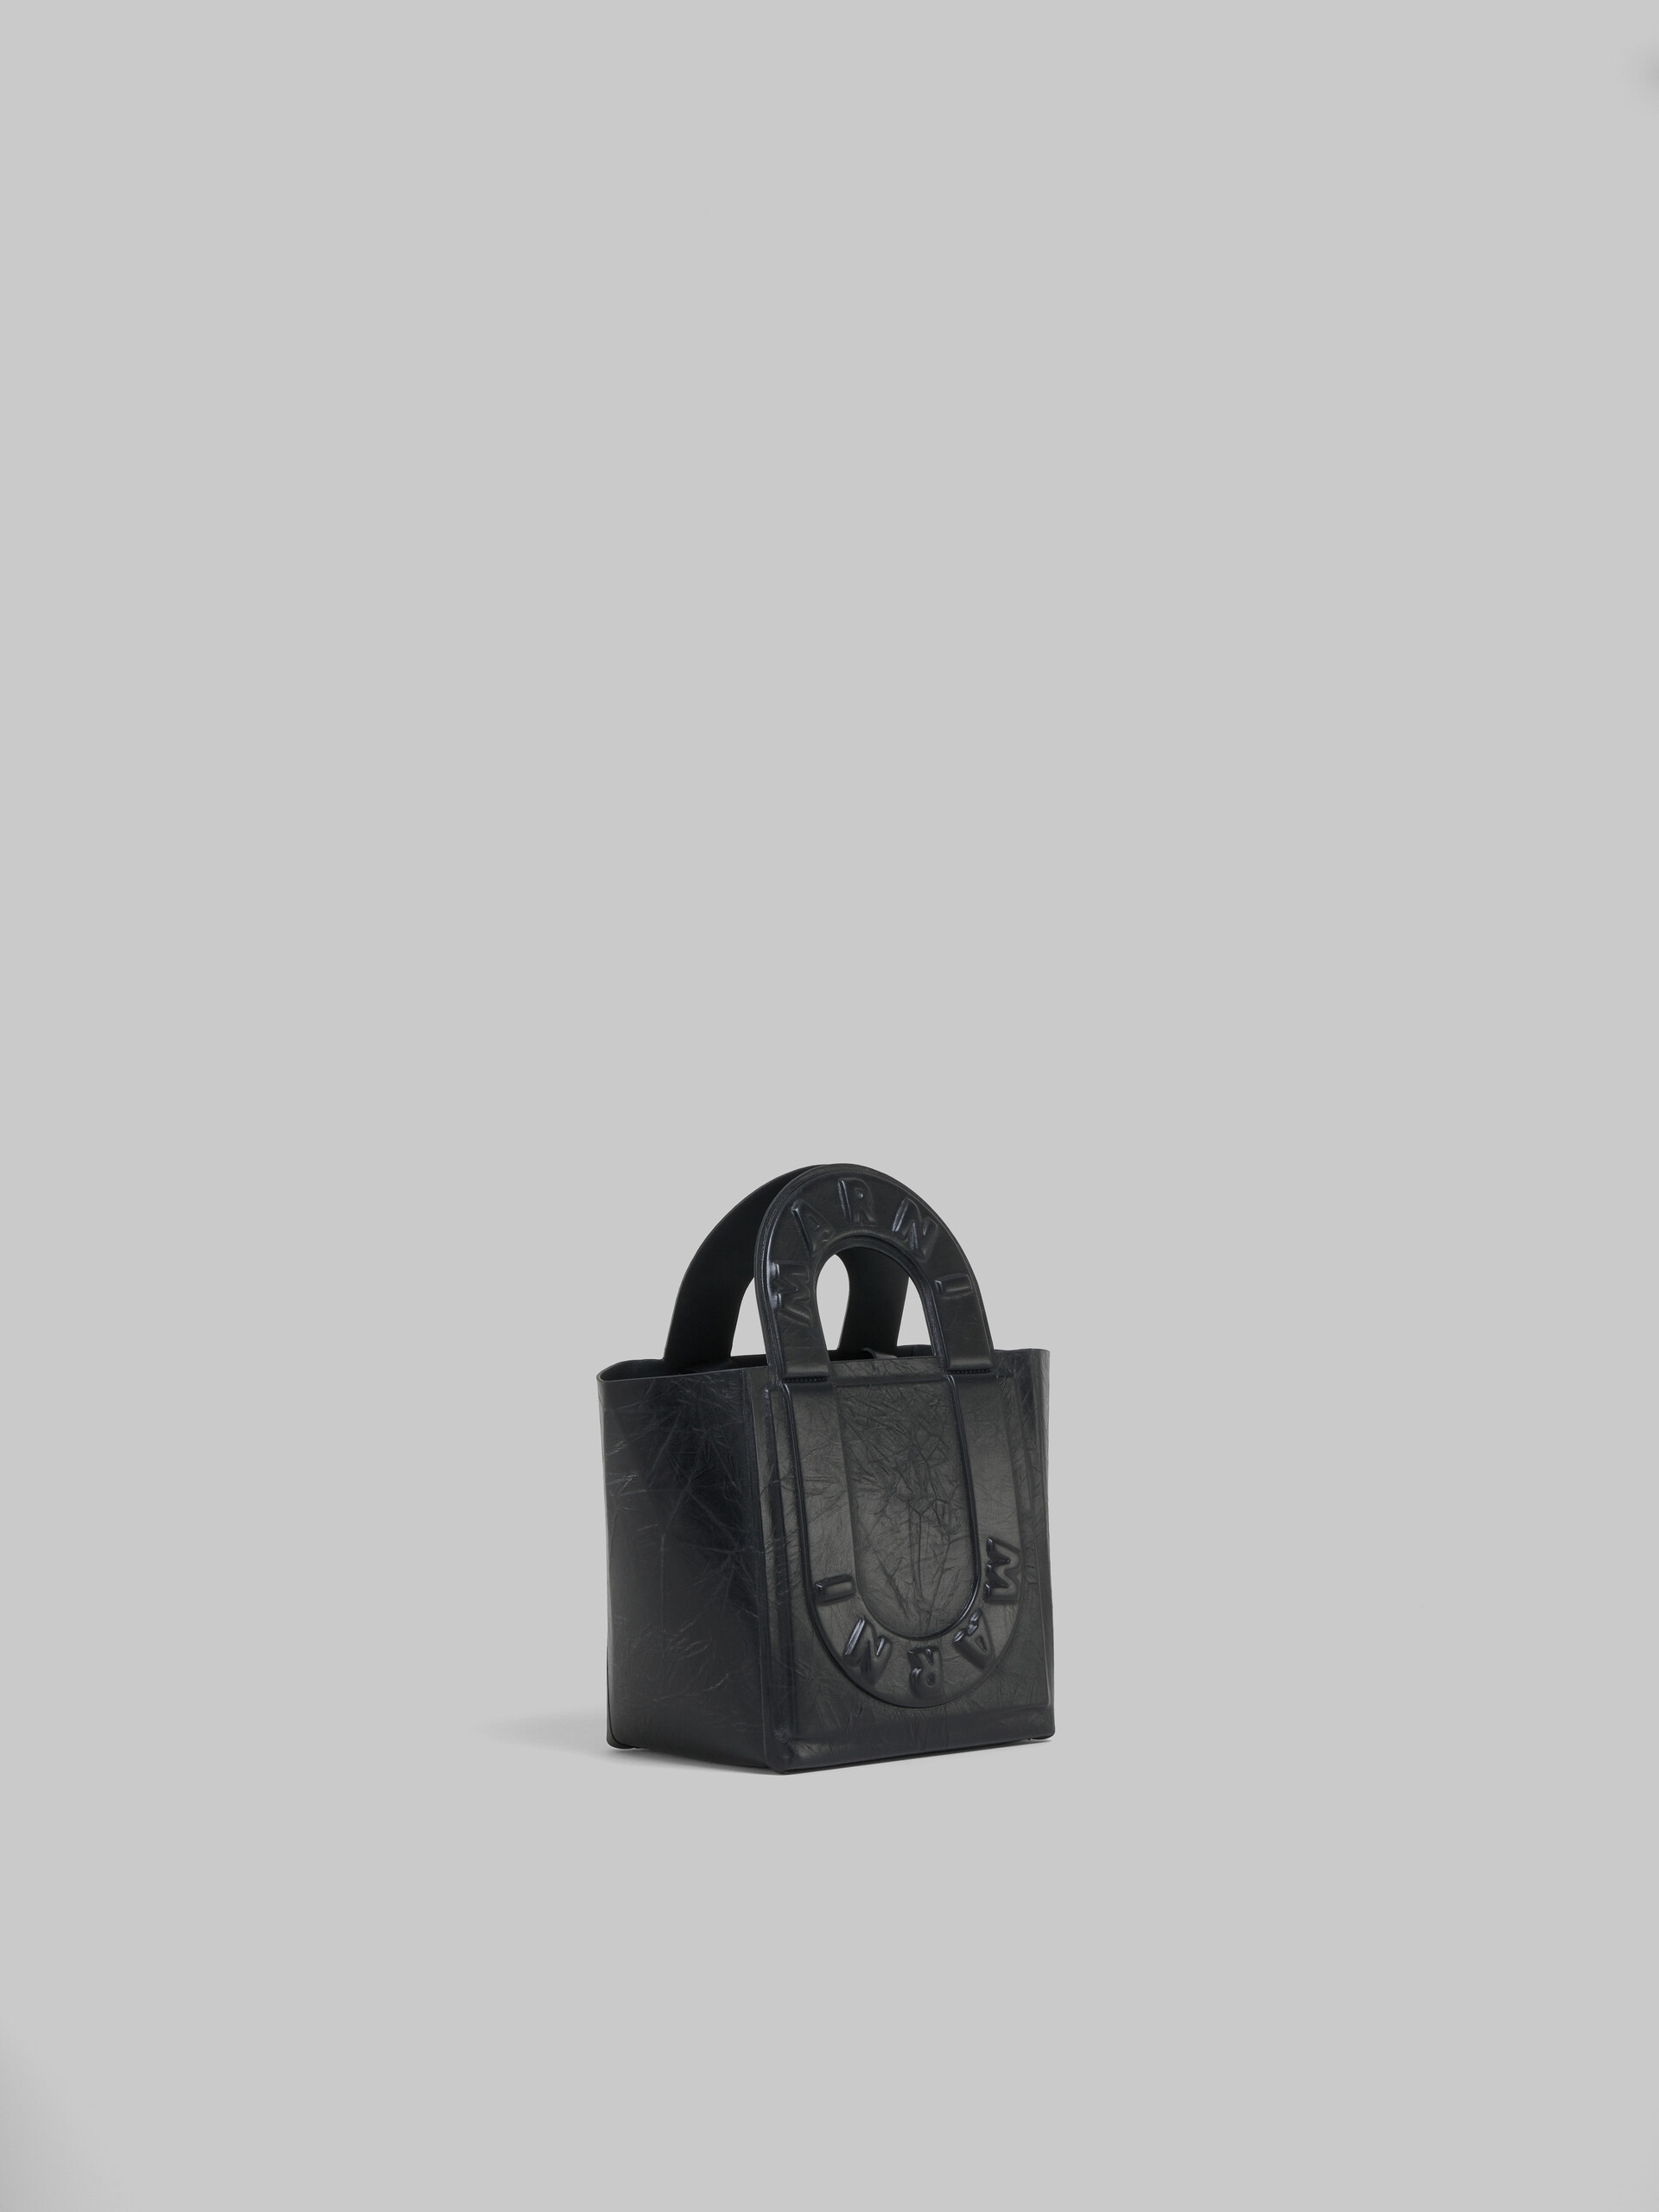 ターコイズ レザー製 Sweedy スモール トートバッグ - ショッピングバッグ - Image 5